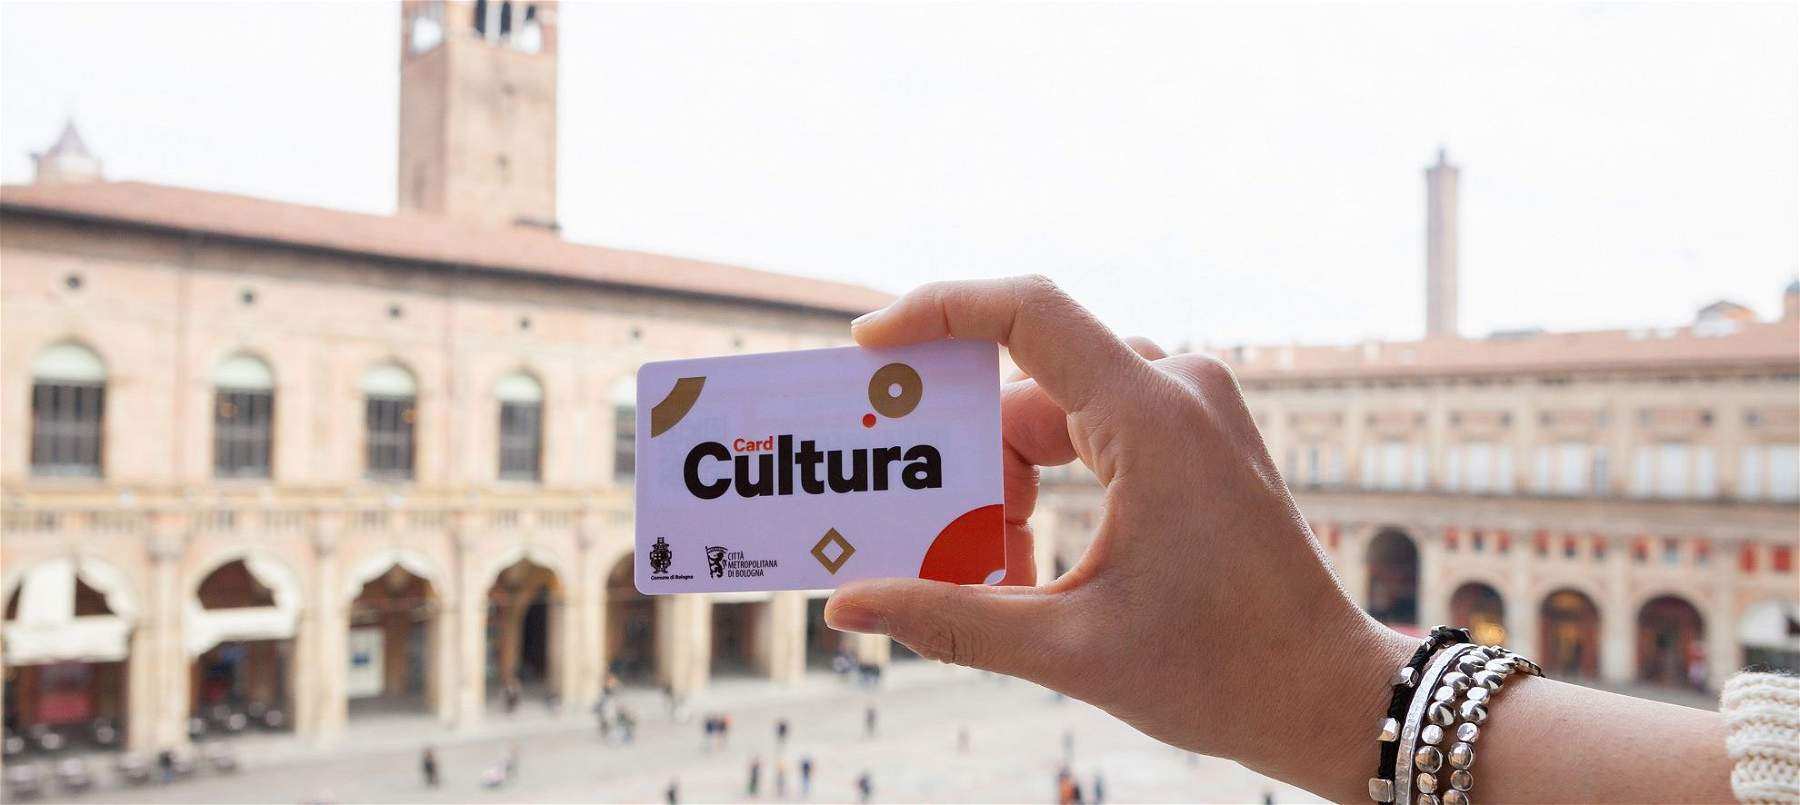 A Bologna nasce la Card Cultura per 12 mesi gratis nei musei e riduzioni per mostre, teatri, cinema e concerti